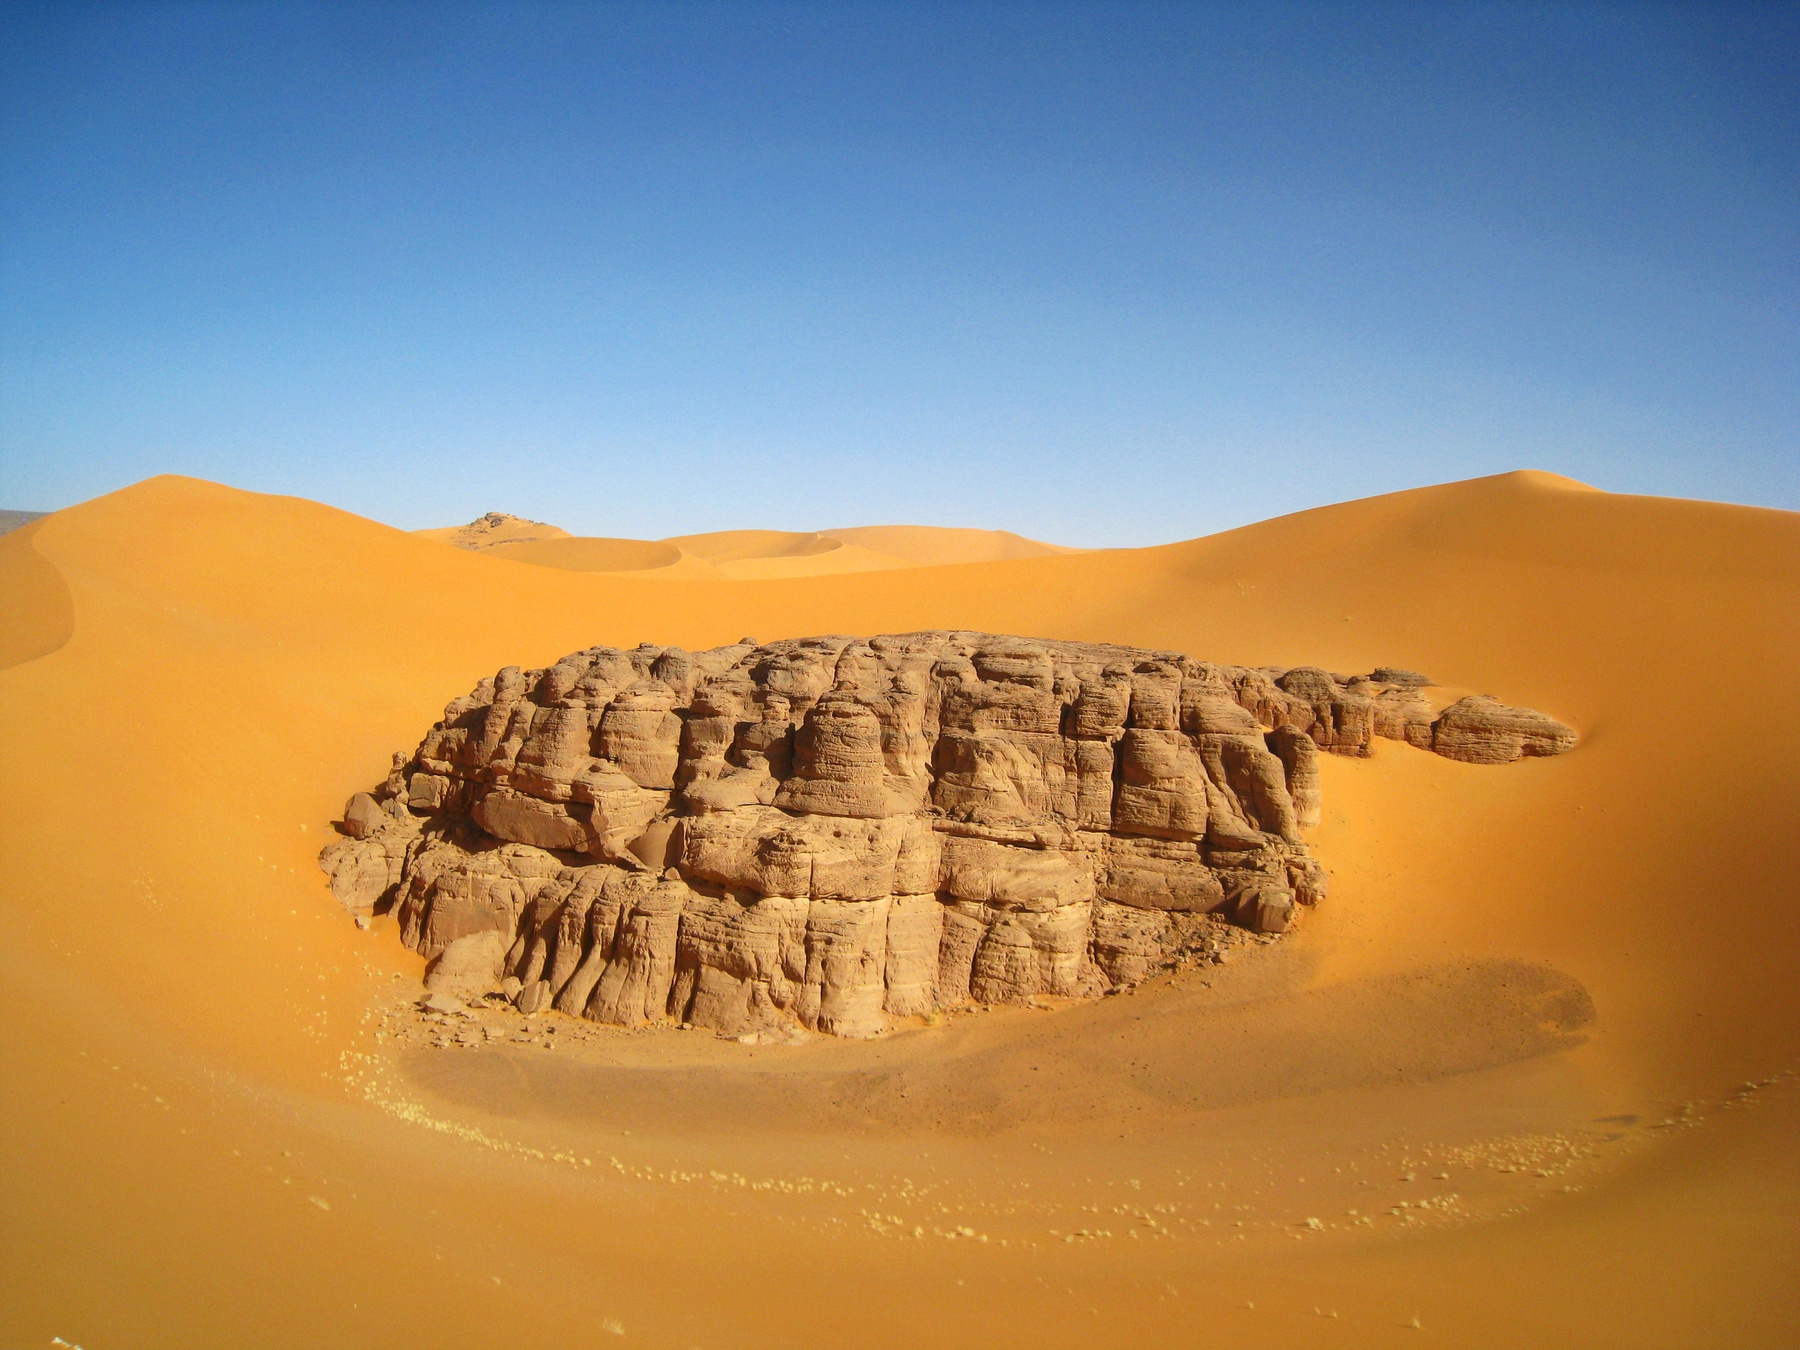 Сахара наступает, и высокие песчаные дюны потихонечку засыпают древние скалы нагорья Тадрат. Алжир пейзаж скалы